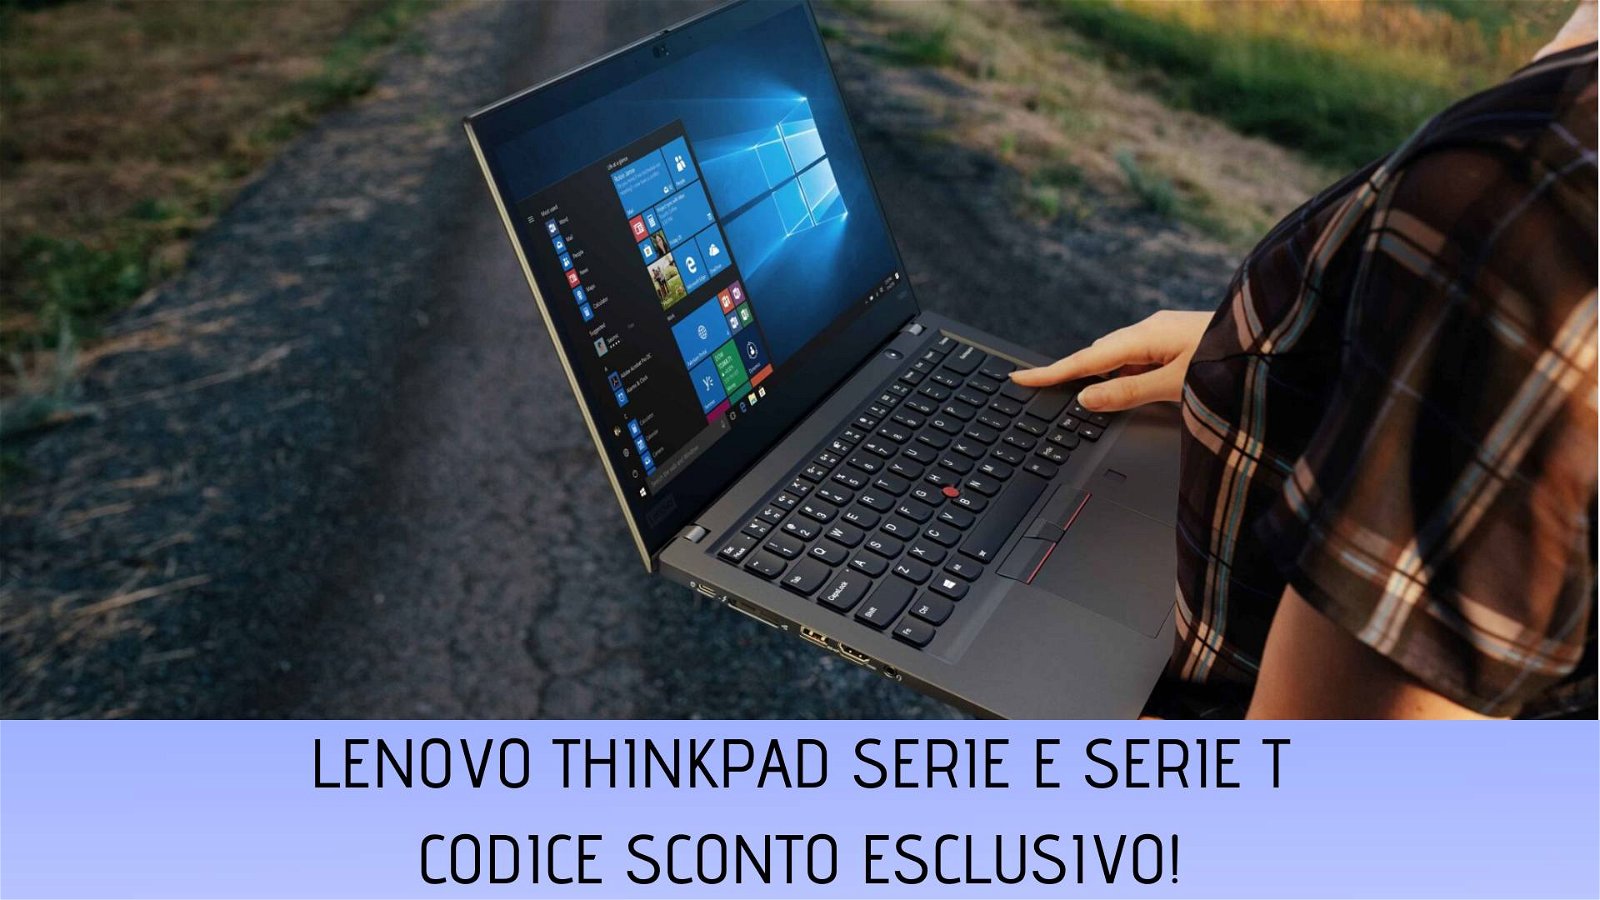 Immagine di Lenovo: coupon sconto esclusivo su ThinkPad serie E e serie T